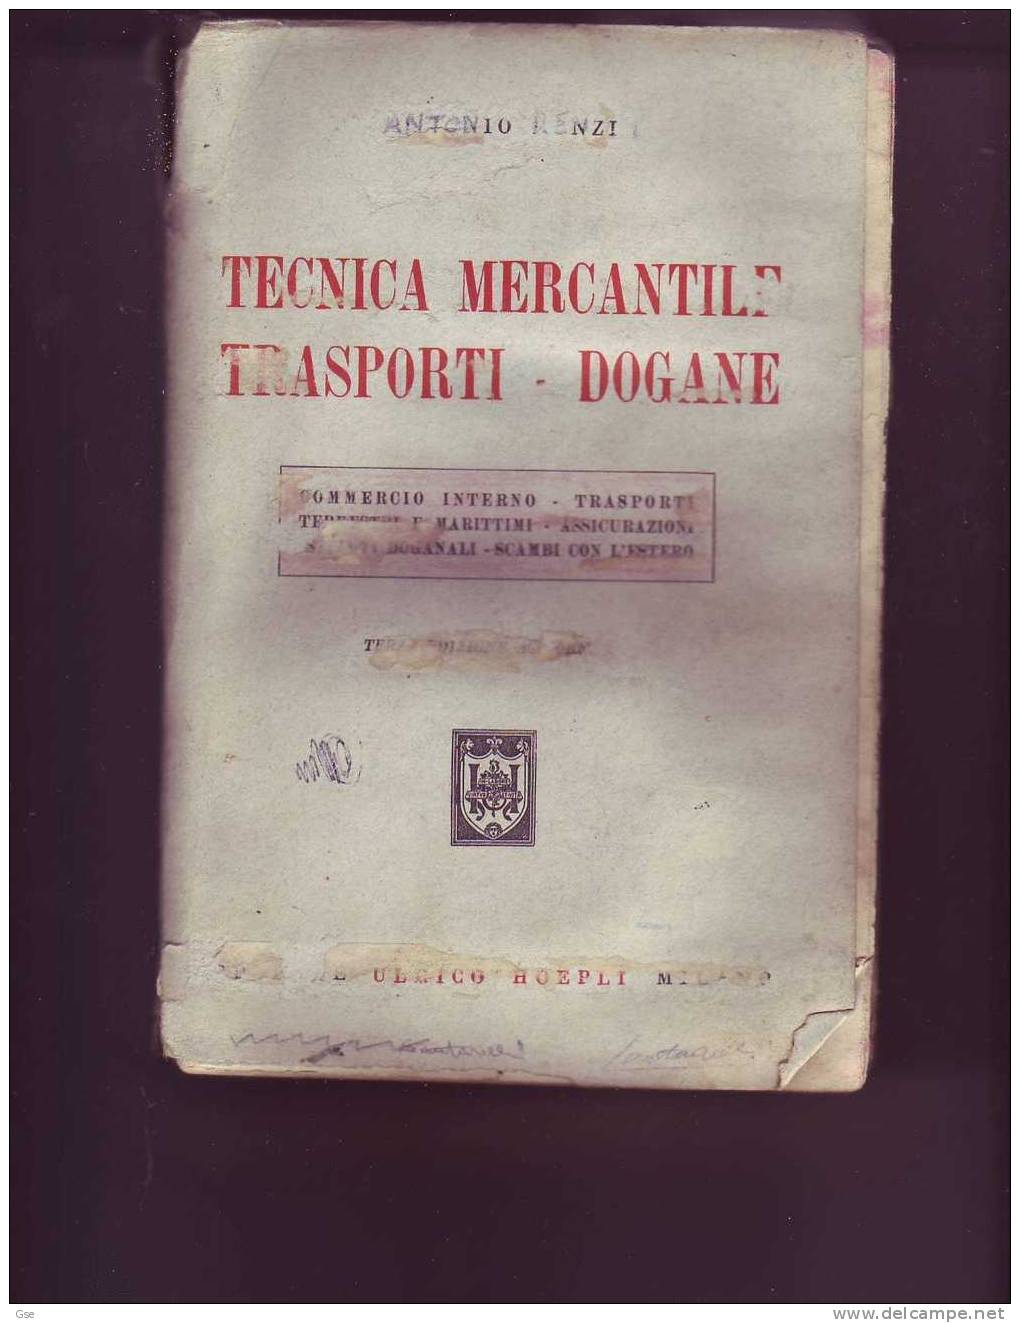 TECNICA MERCANTILE TRASPORTI DOGANE  1956 - A. Renzi (pagine 398) - Law & Economics